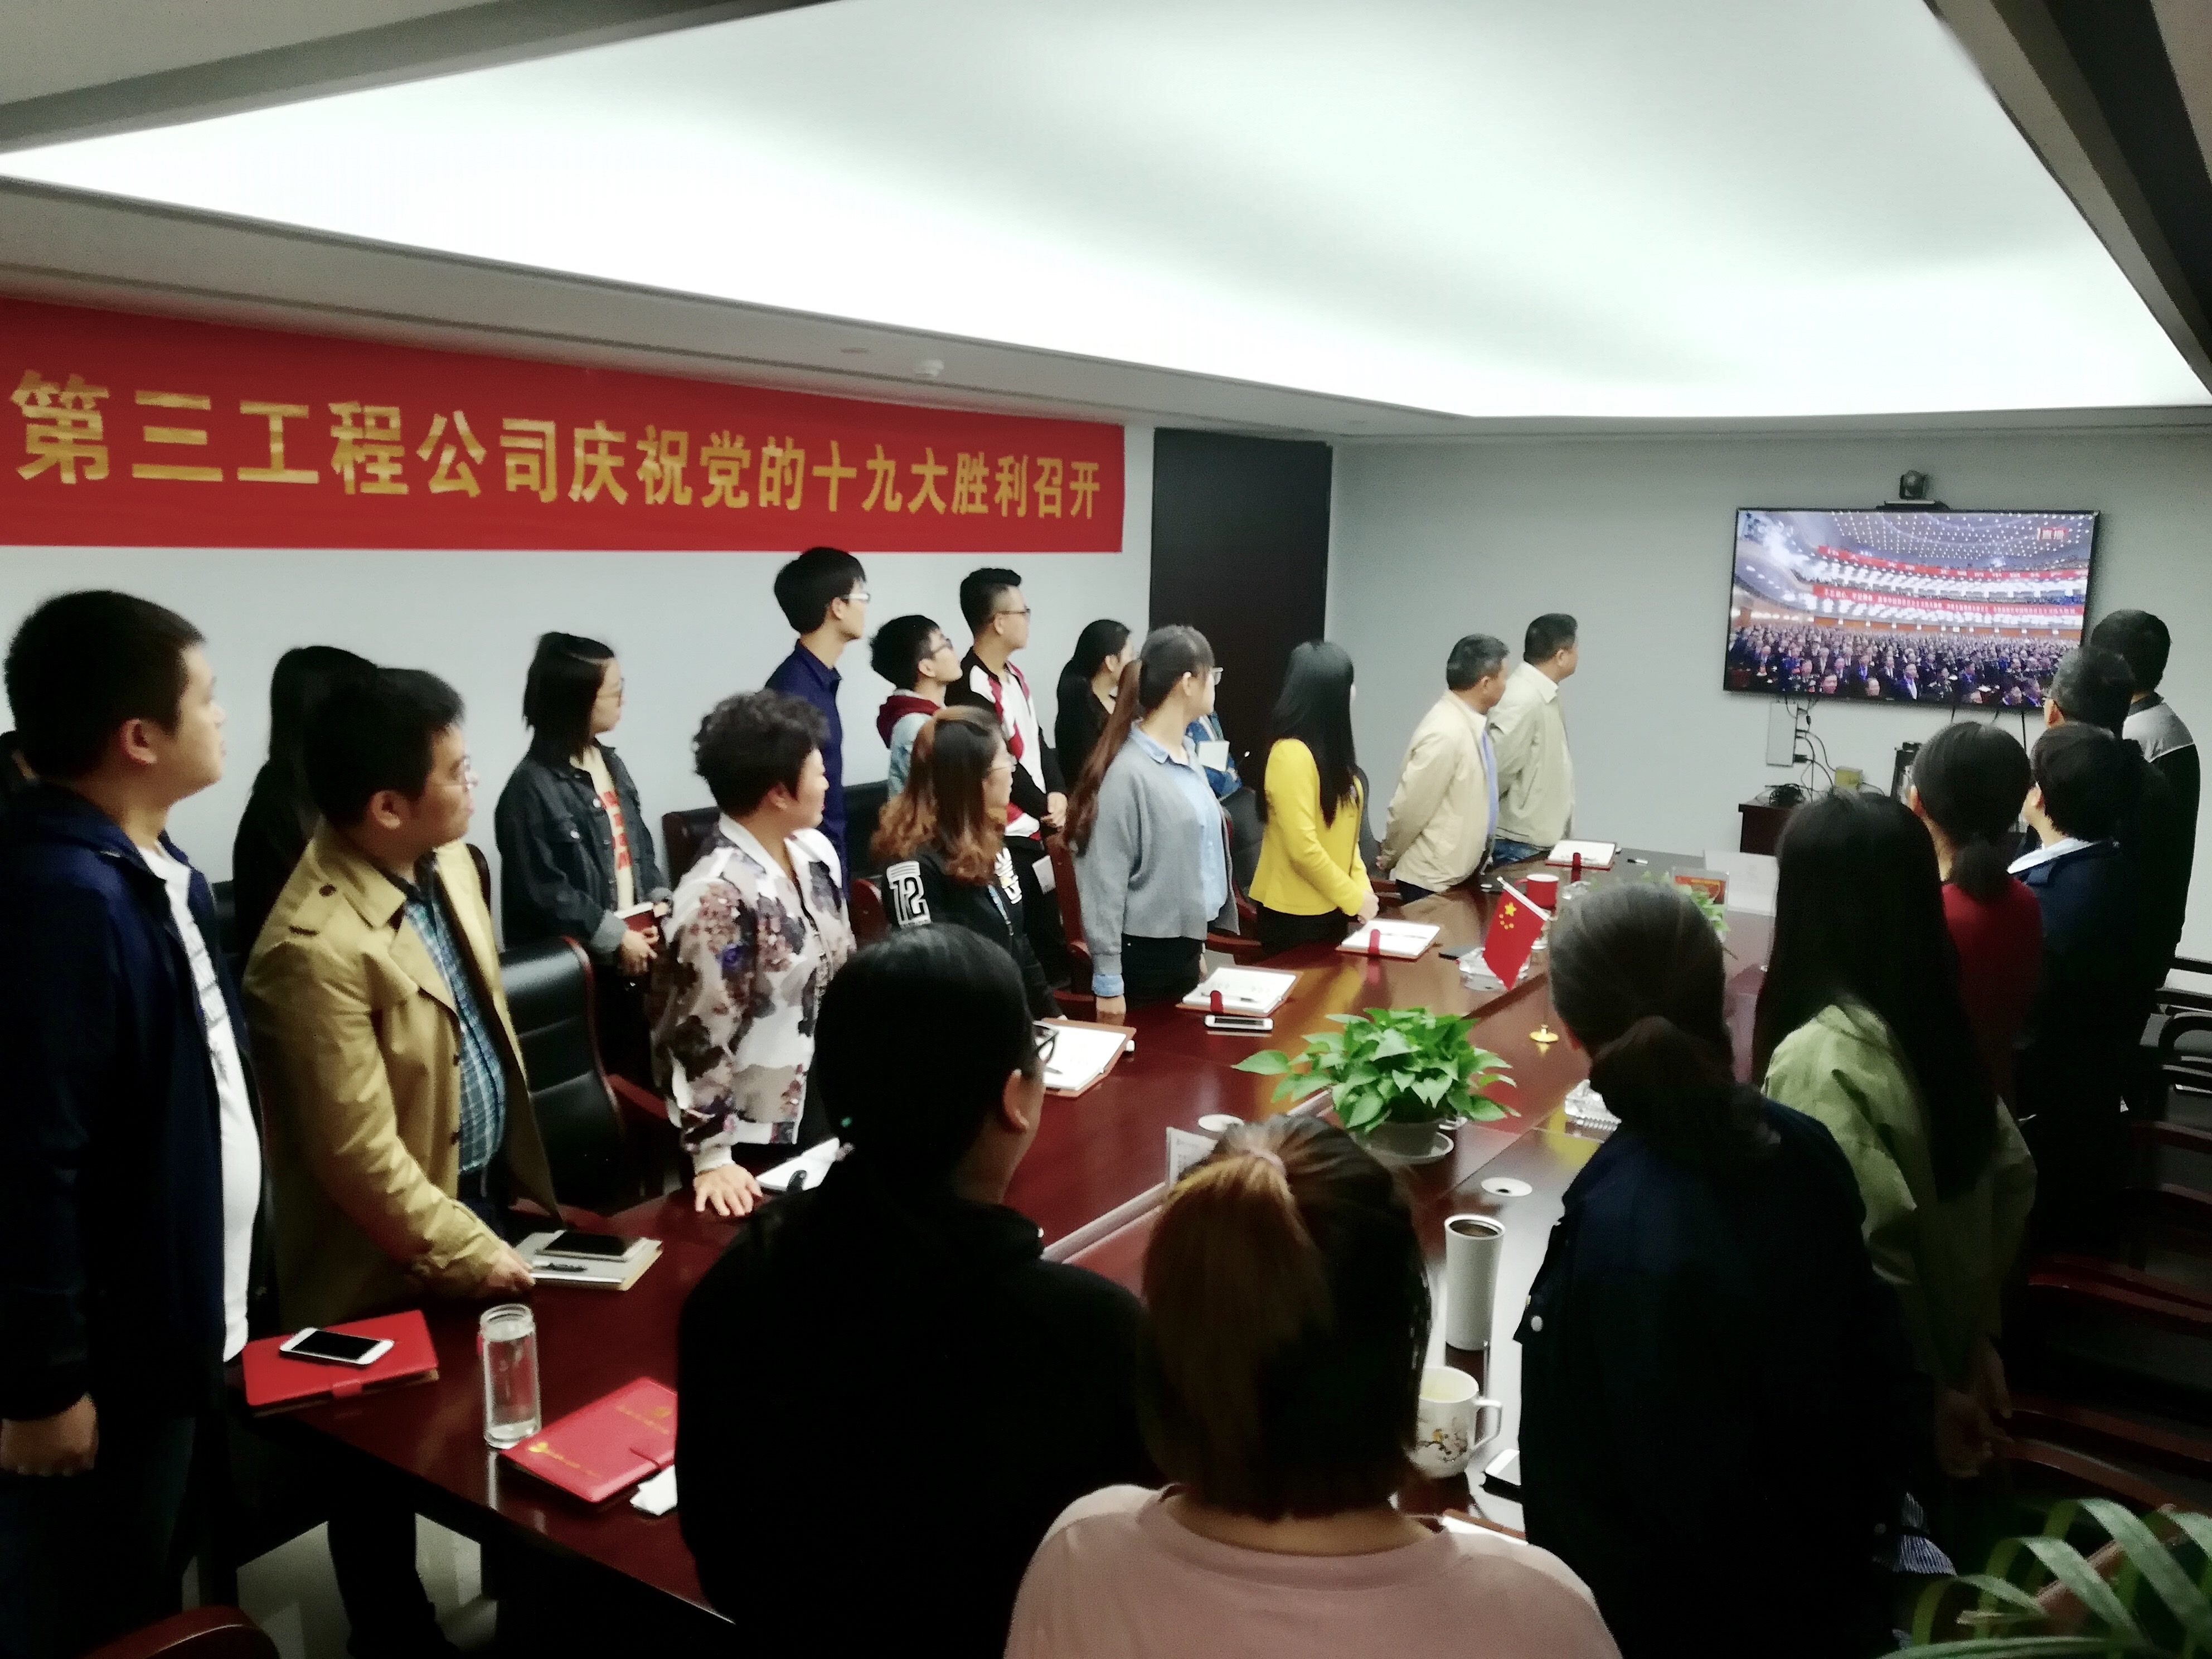 浙江建工第三工程公司本部党支部全体党员起立唱国歌